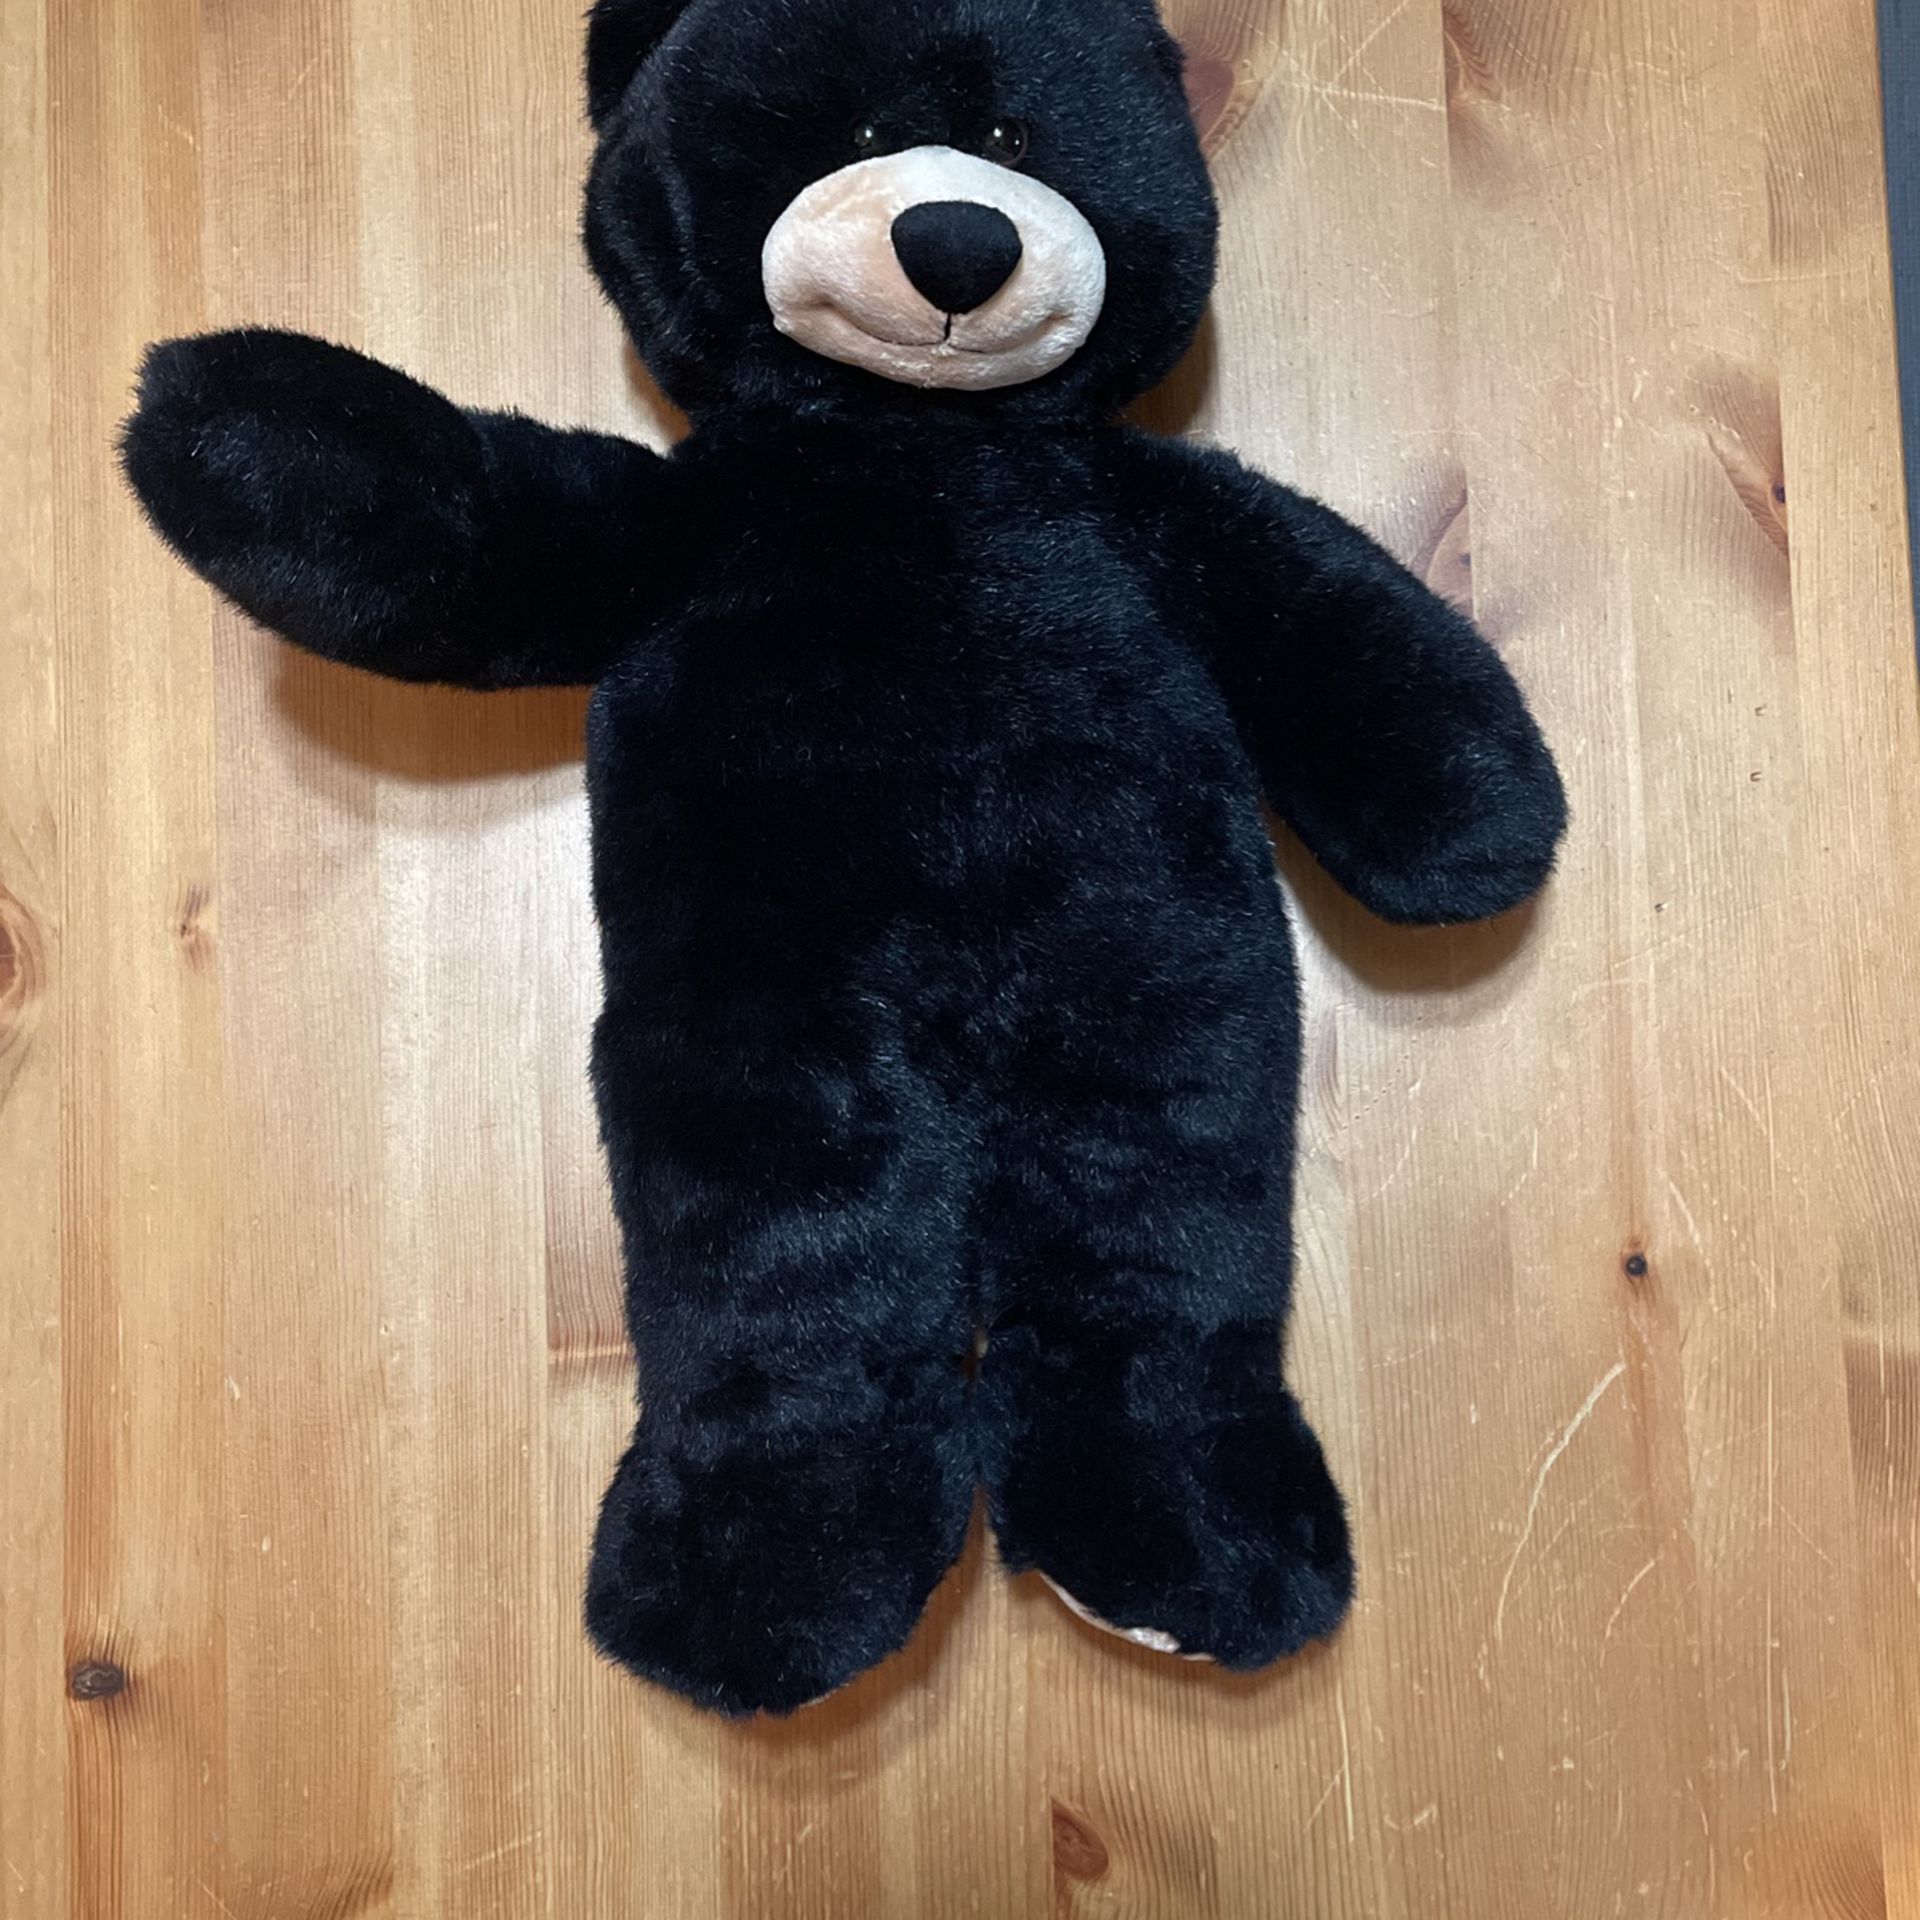 Build a bear black 18” teddy bear 